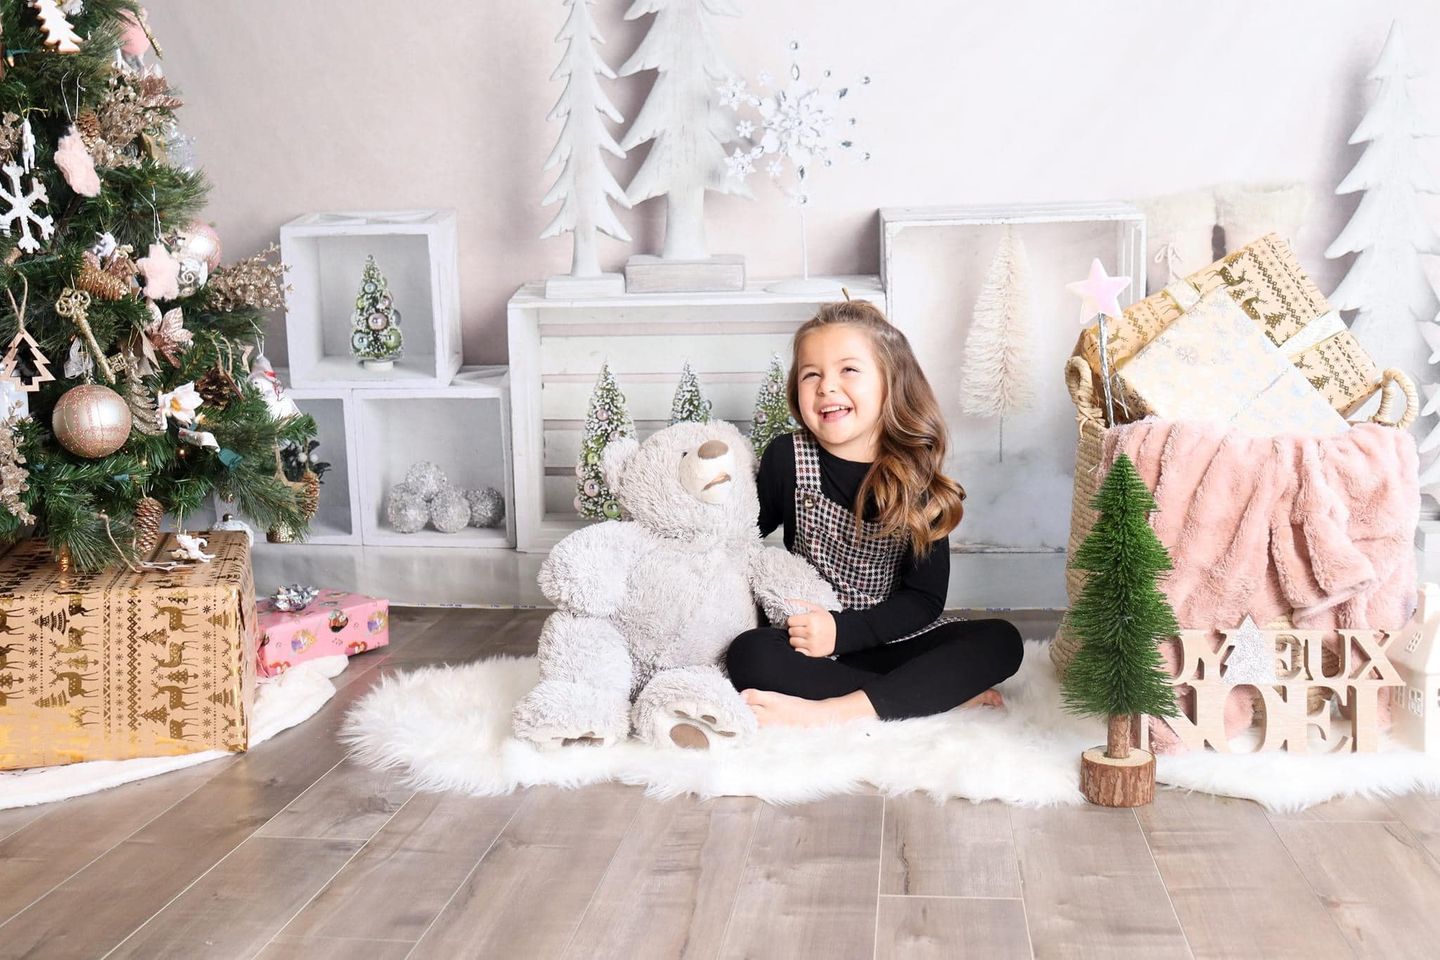 Kate Weihnachtseleganter Winter-Anzeigen-Hintergrund für die Fotografie entworfen von Mandy Ringe Photography